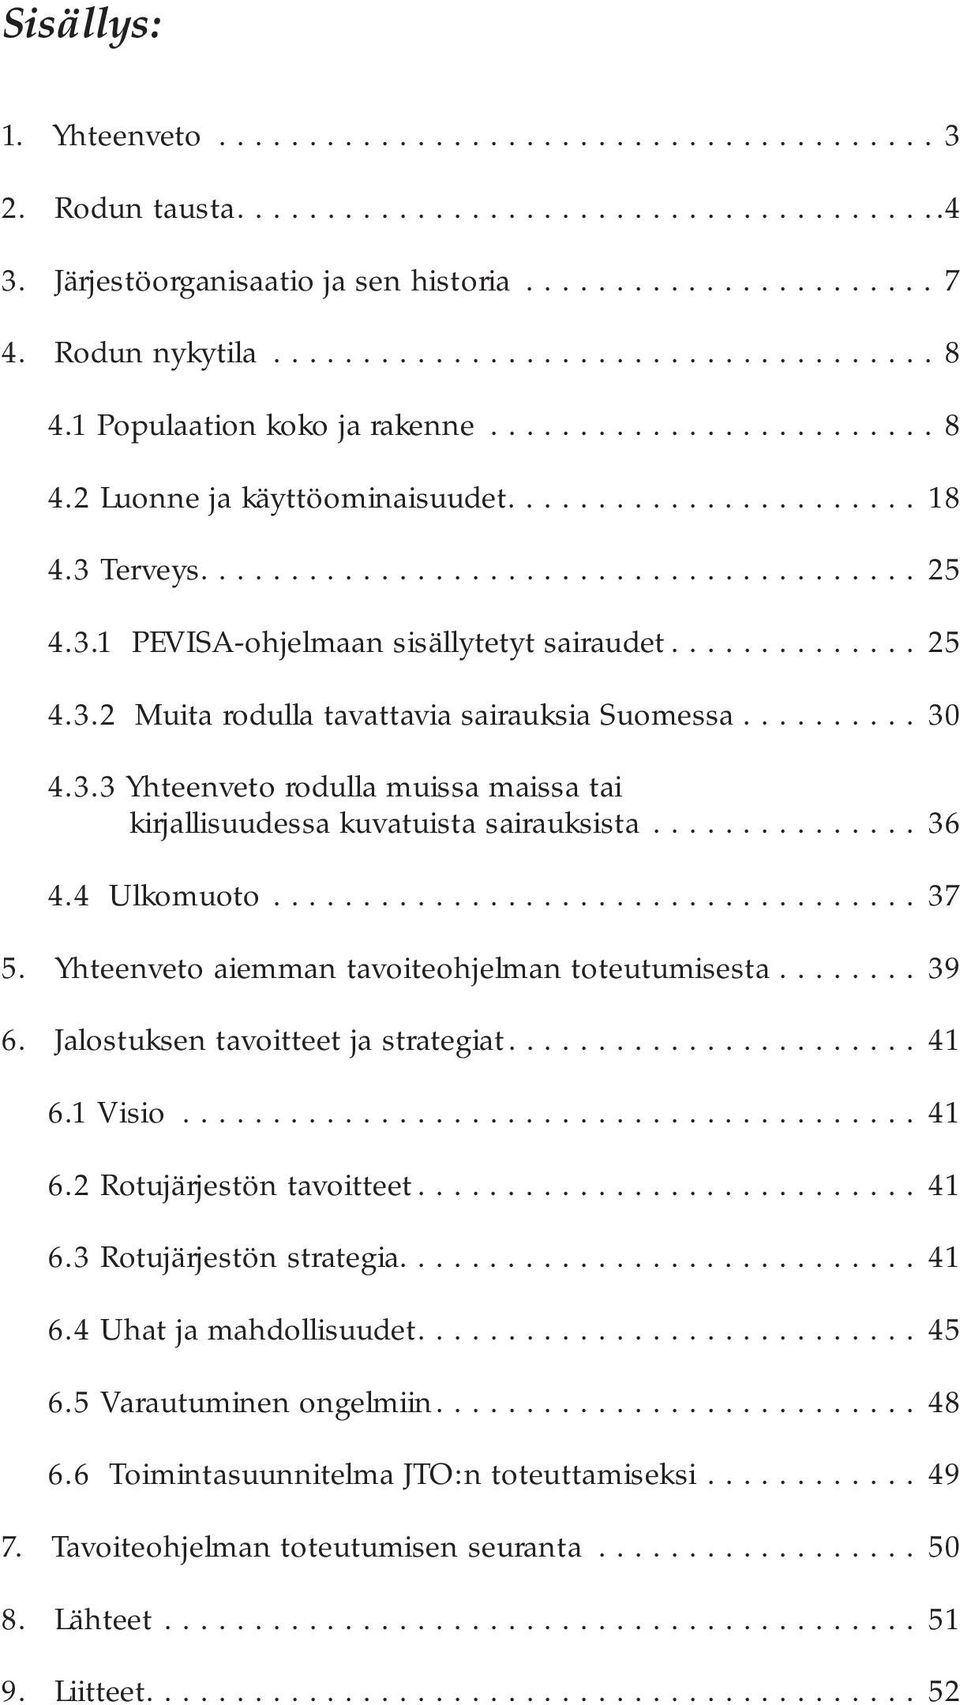 3.1 PEVISA-ohjelmaan sisällytetyt sairaudet.............. 25 4.3.2 Muita rodulla tavattavia sairauksia Suomessa.......... 30 4.3.3 Yhteenveto rodulla muissa maissa tai kirjallisuudessa kuvatuista sairauksista.